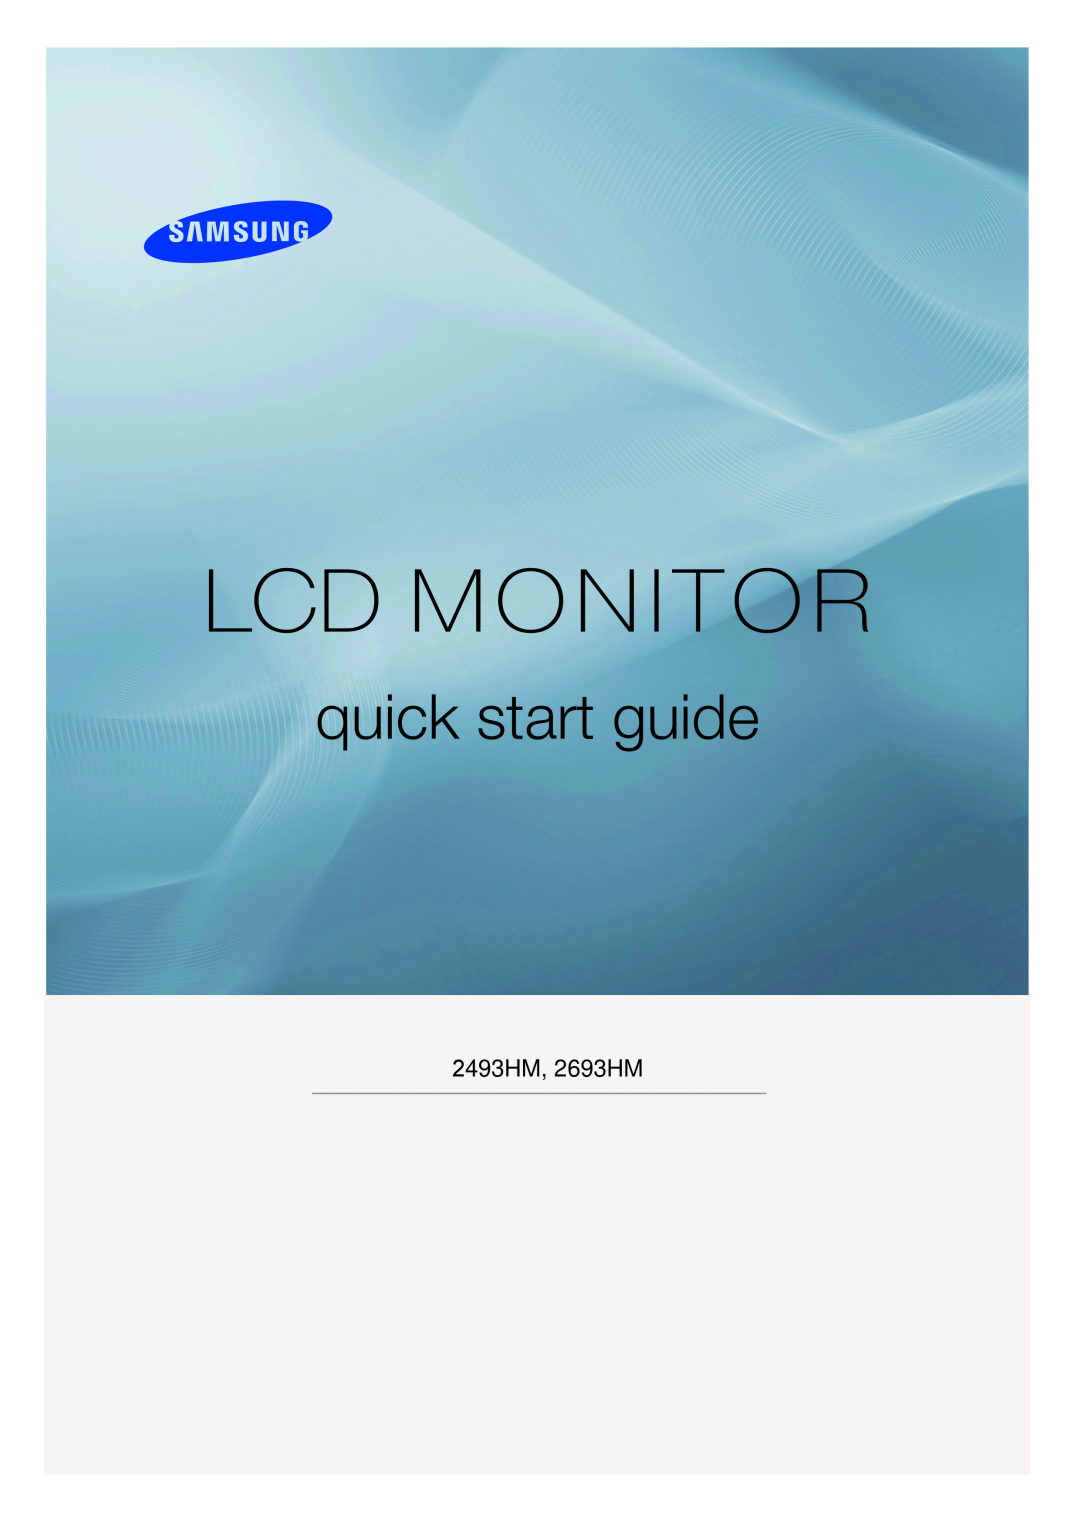 Samsung LS24KIERBQ/EDC, LS24KIEEFV/EDC, LS26KIERBQ/EDC, LS26KIEEFV/EDC manual Lcd Monitor, quick start guide, 2493HM, 2693HM 